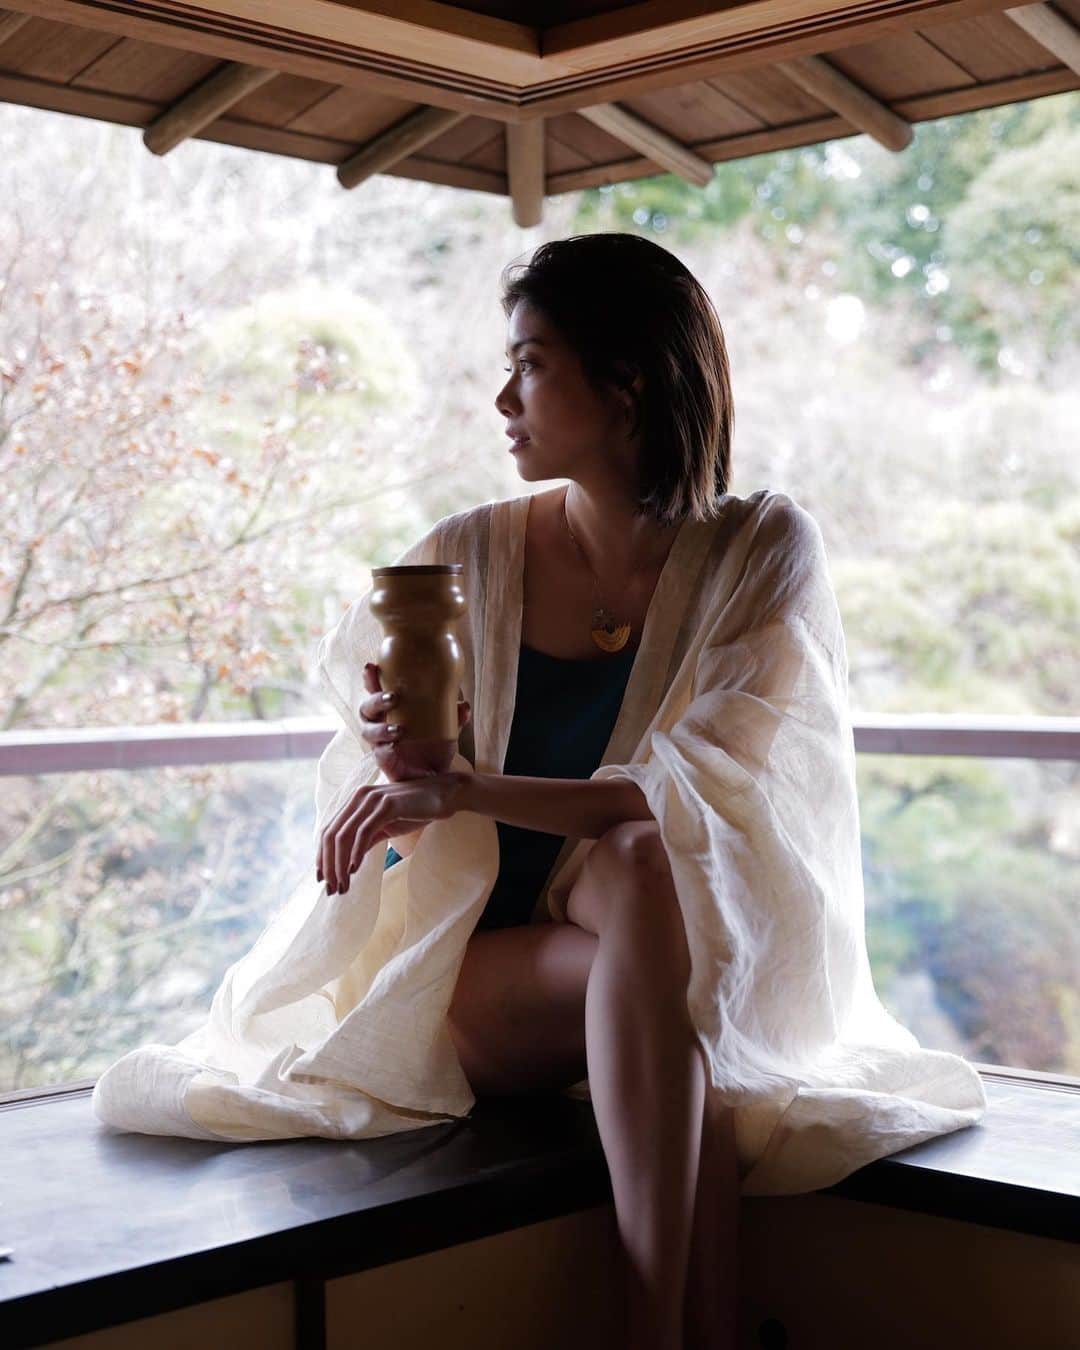 森星のインスタグラム：「Introducing Japanese craft “SUITŌ”  irosabi collection made from Urushi. by @tefutefulab  このたび、 茶の湯の文化から着想を得た、 漆器“SUITŌ” をデザインしました。  日本の伝統美と現代性が融合した空間を提供するアマン東京 @aman_tokyo にて展開されます。  【色寂】 二色にレイアリングされた国産の色漆が、約20年30年という時間をかけて、経年変化していく事で、次の季節の色が下から覗いてくる塗りを実現しました。  国産、そして天然の材である事にこだわり、北陸地方の素晴らしい技術をもった職人の方々にも恵まれ、 自然と人の力で、一つ一つ丁寧に作られた漆器に、tefutefuの刻印を押して、限られた数量のみ少しずつ作成しております。  手にとって頂く方には、ぜひ一緒に暮らしていく事で、SUITŌが豊かな一杯をおもてなしする暮らしの芸術となり、そしてさらにその生きてきた足跡が世代を超えて受け継いでいける器になる事を願っております。  最後に、 この想いを実現してくれた素晴らしいtefutefuのチームのみんなをはじめ、今回のプロジェクトに共感し携わってくれた各ジャンルのクリエイターの方々、最後まで諦めずに美しいものに仕上げて頂いた職人の皆様、こだわりぬいてオリジナルの色漆の調色を実現してくださった漆屋さん、そしてなにより日本独自の美学の文化を構築し、繋いでくれた先人の皆様と、日本の豊かな自然に感謝します。  これからも@tefutefulabでは、長い間繋いできたからこそ生まれてきた日本独自の豊かな伝統と文化、自然に感謝しながら、クリエーションをしていきます。  tefutefu creative director  Hikari Mori」